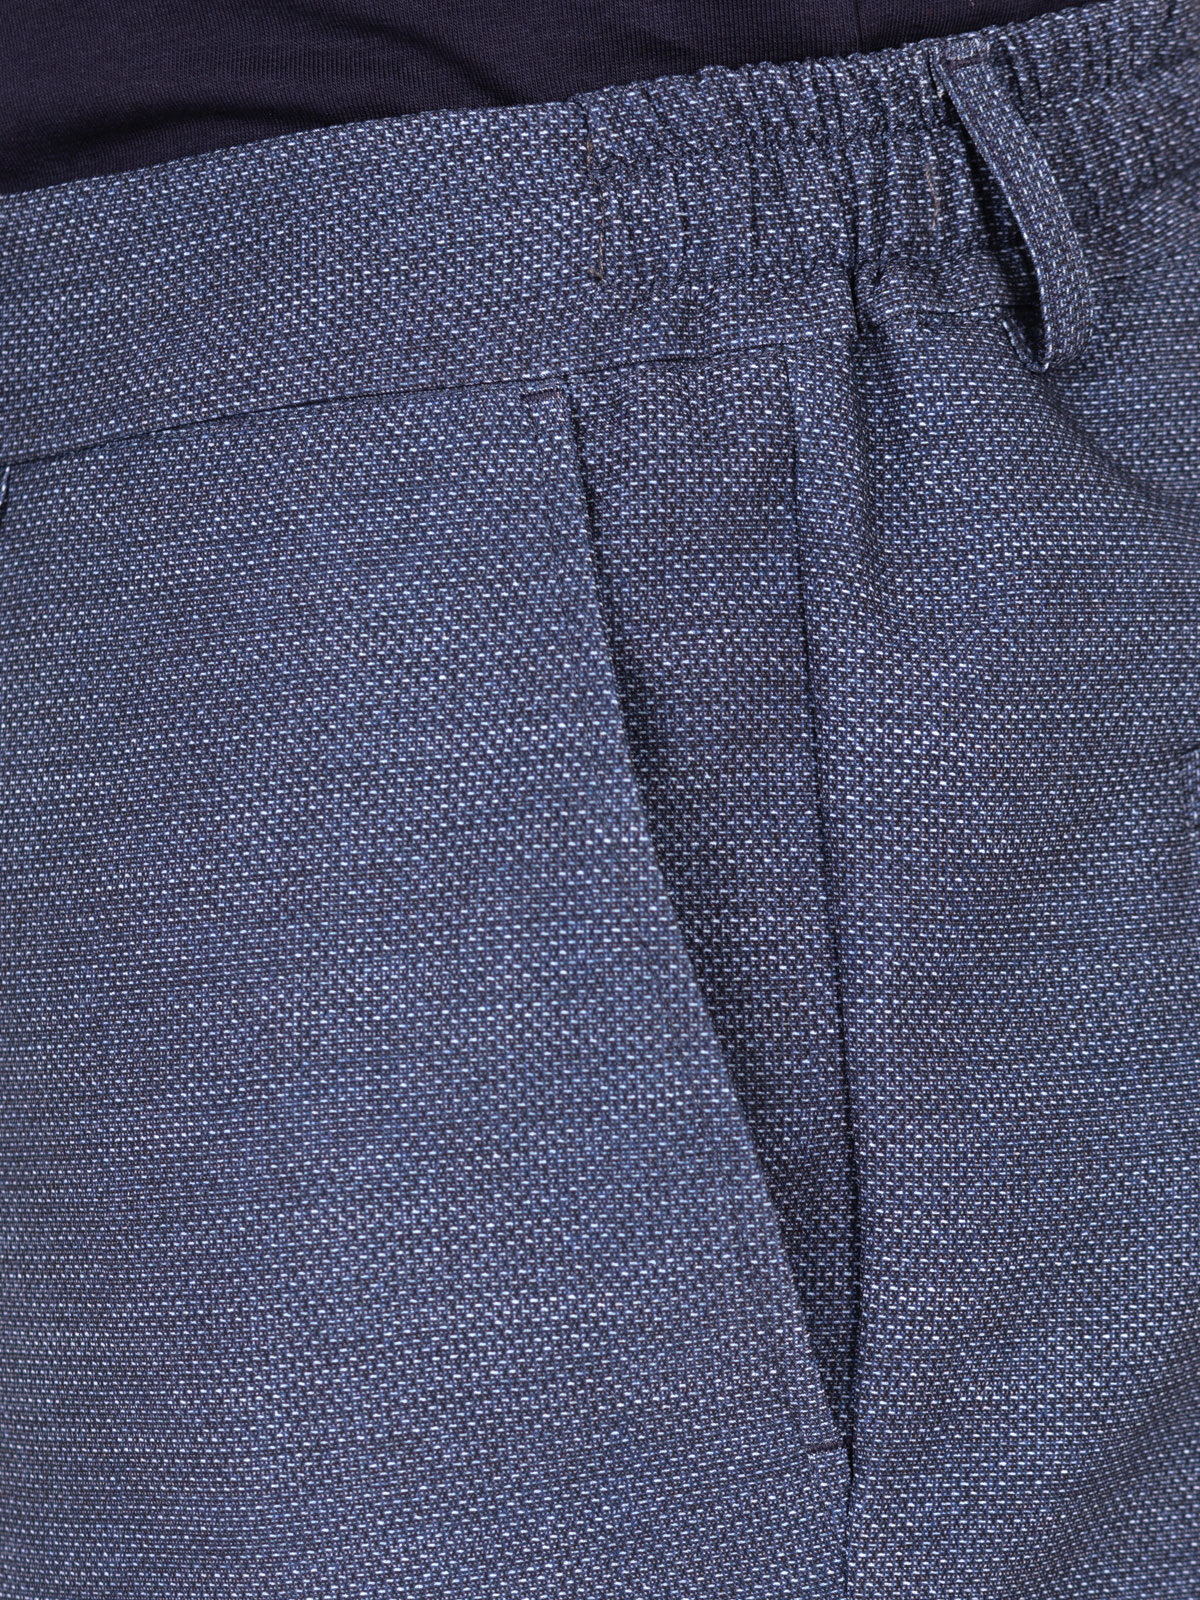 Αθλητικό παντελόνι σκούρο μπλε μελανζέ - 29009 € 55.12 img4